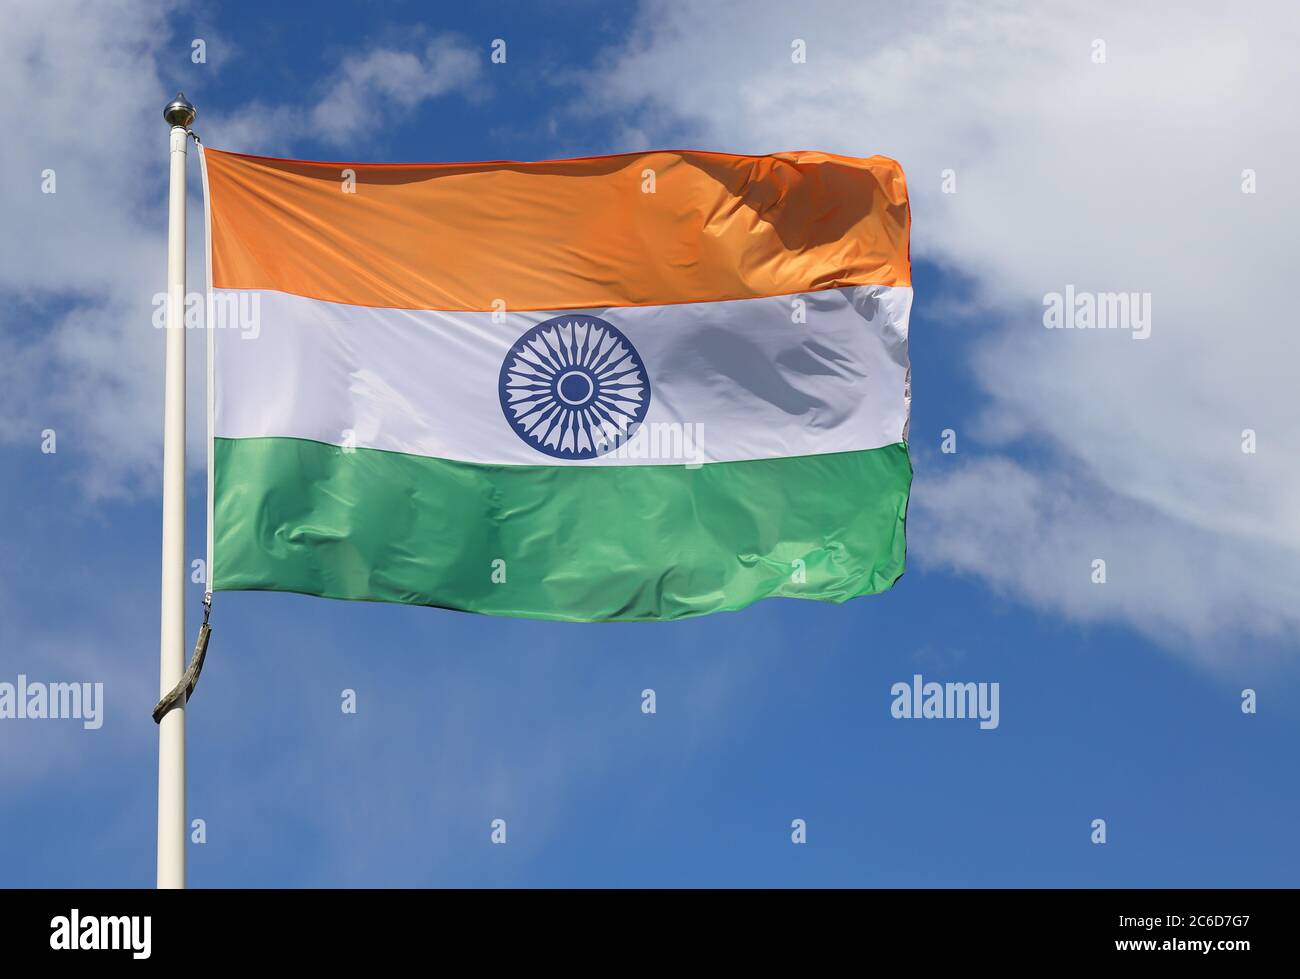 The flag of India against a blue sky.Närbild på indisk flagga mot blå himmel med moln. Stock Photo